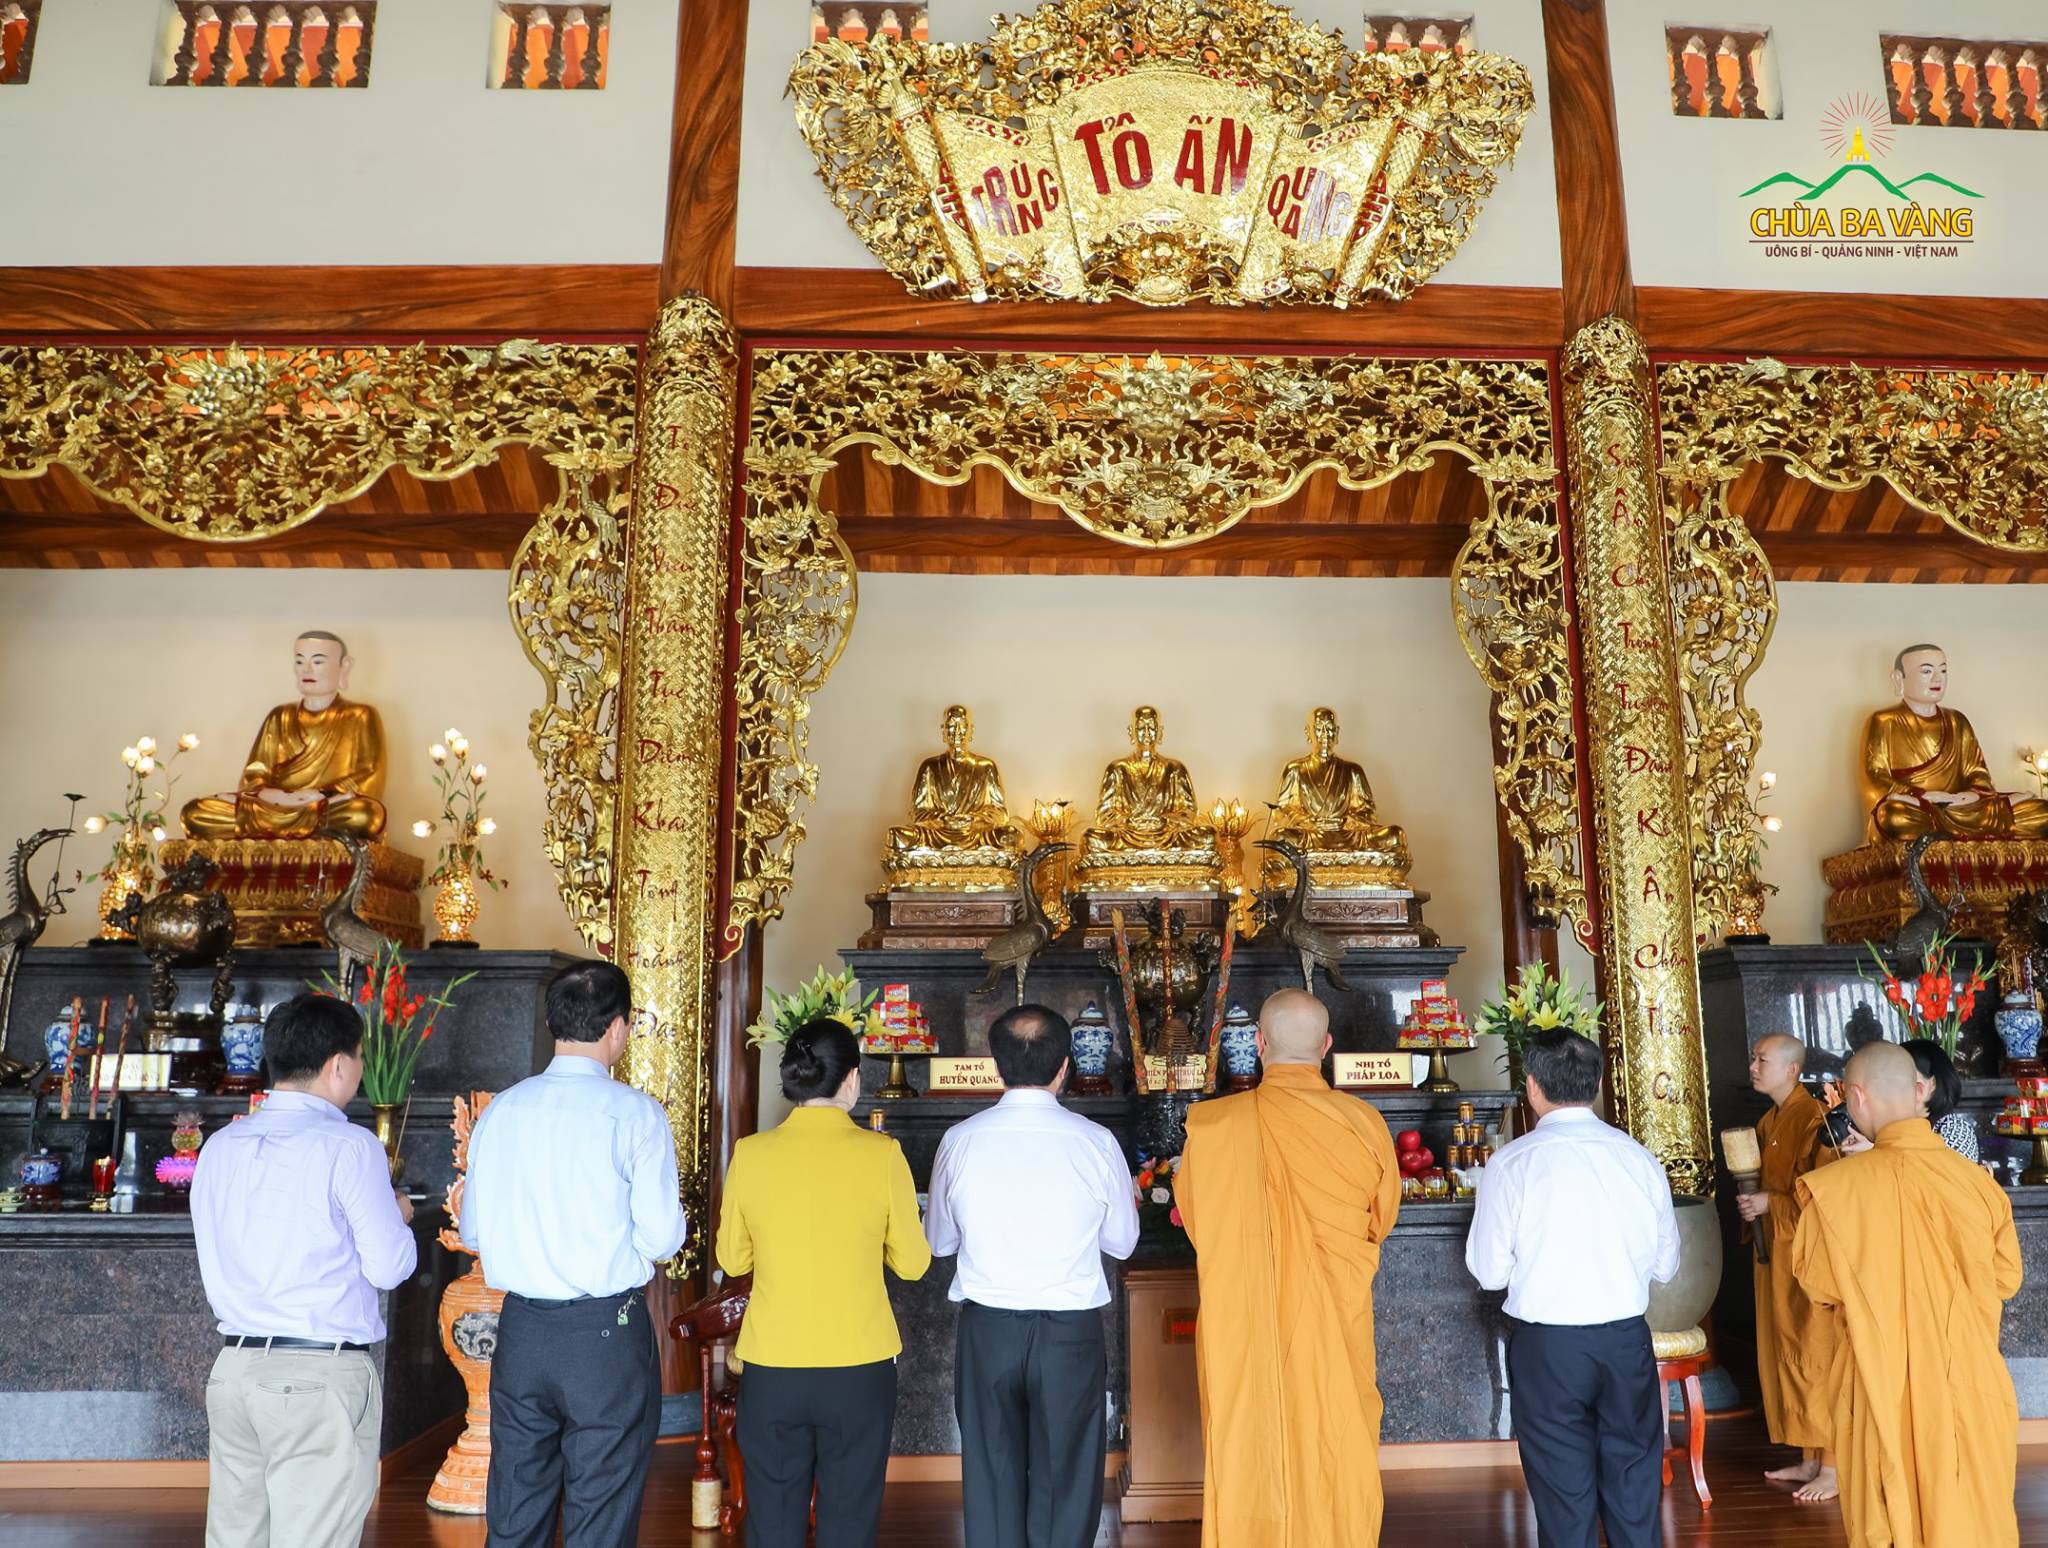 Thầy Trụ trì đã hướng dẫn phái đoàn đi thăm quan và dâng hương tại nhà thờ tổ chùa Ba Vàng.